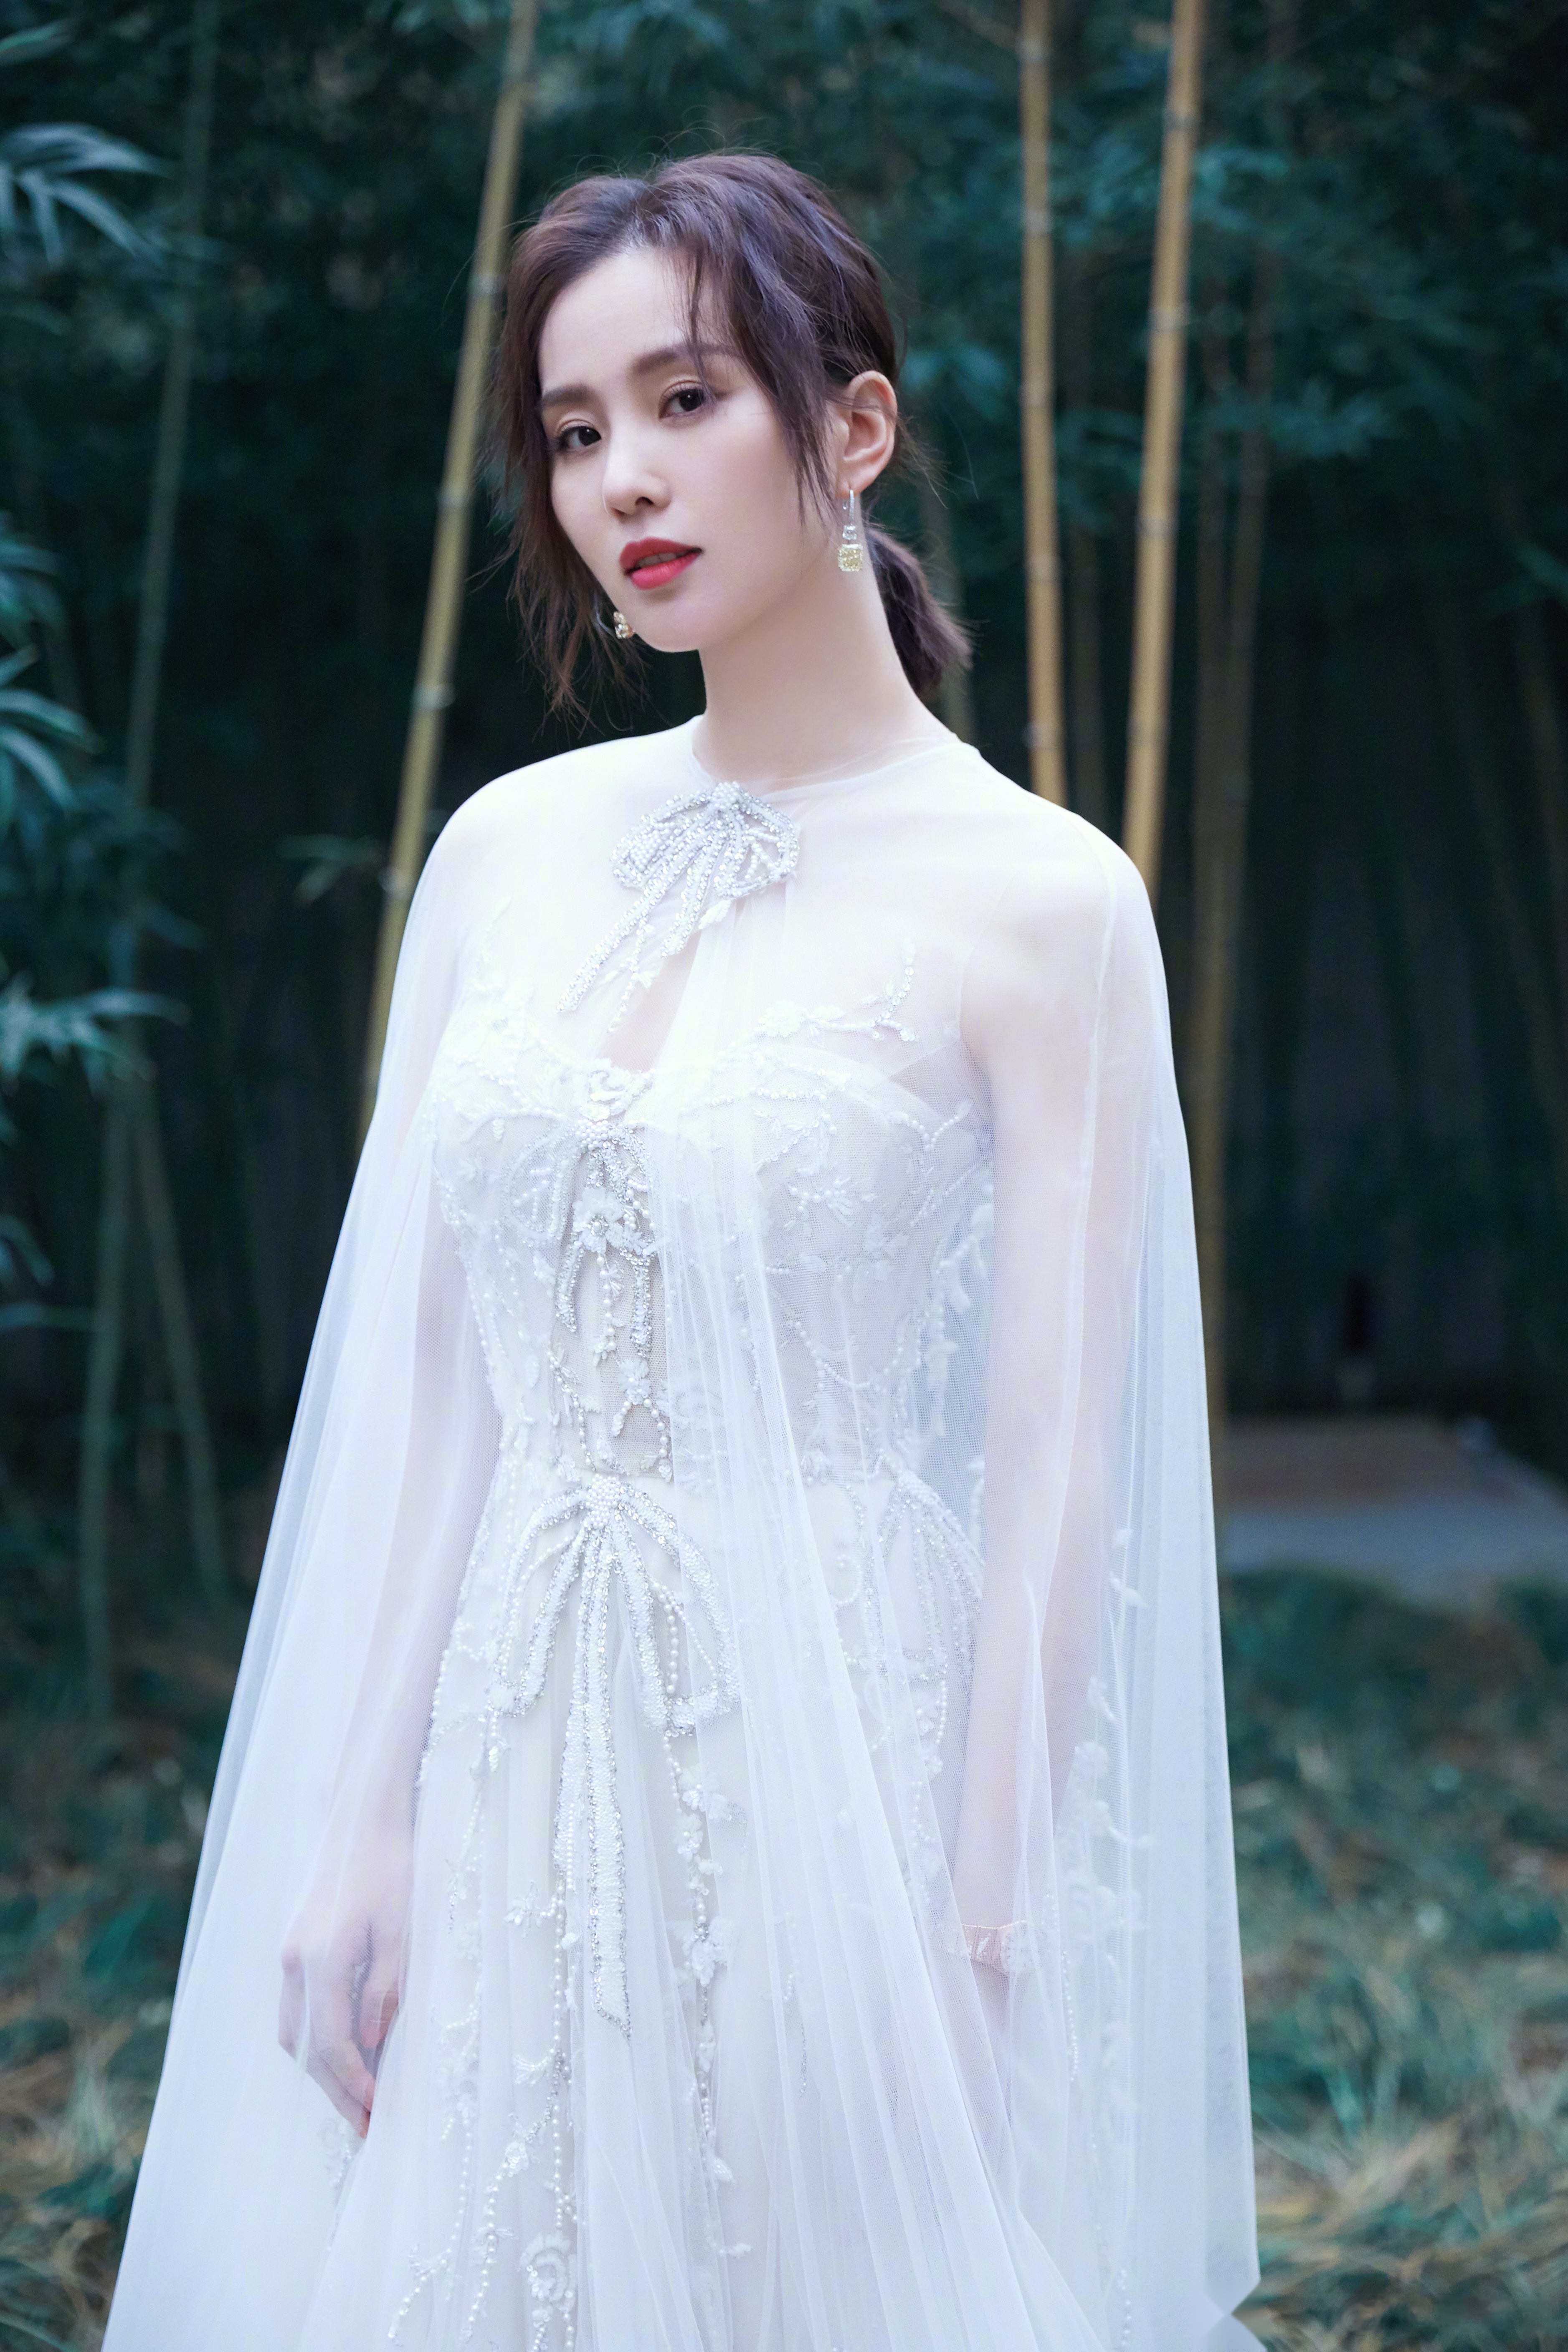 刘诗诗出席bazaar明星慈善夜,身穿白色仙女披风纱裙,清新温柔,此次